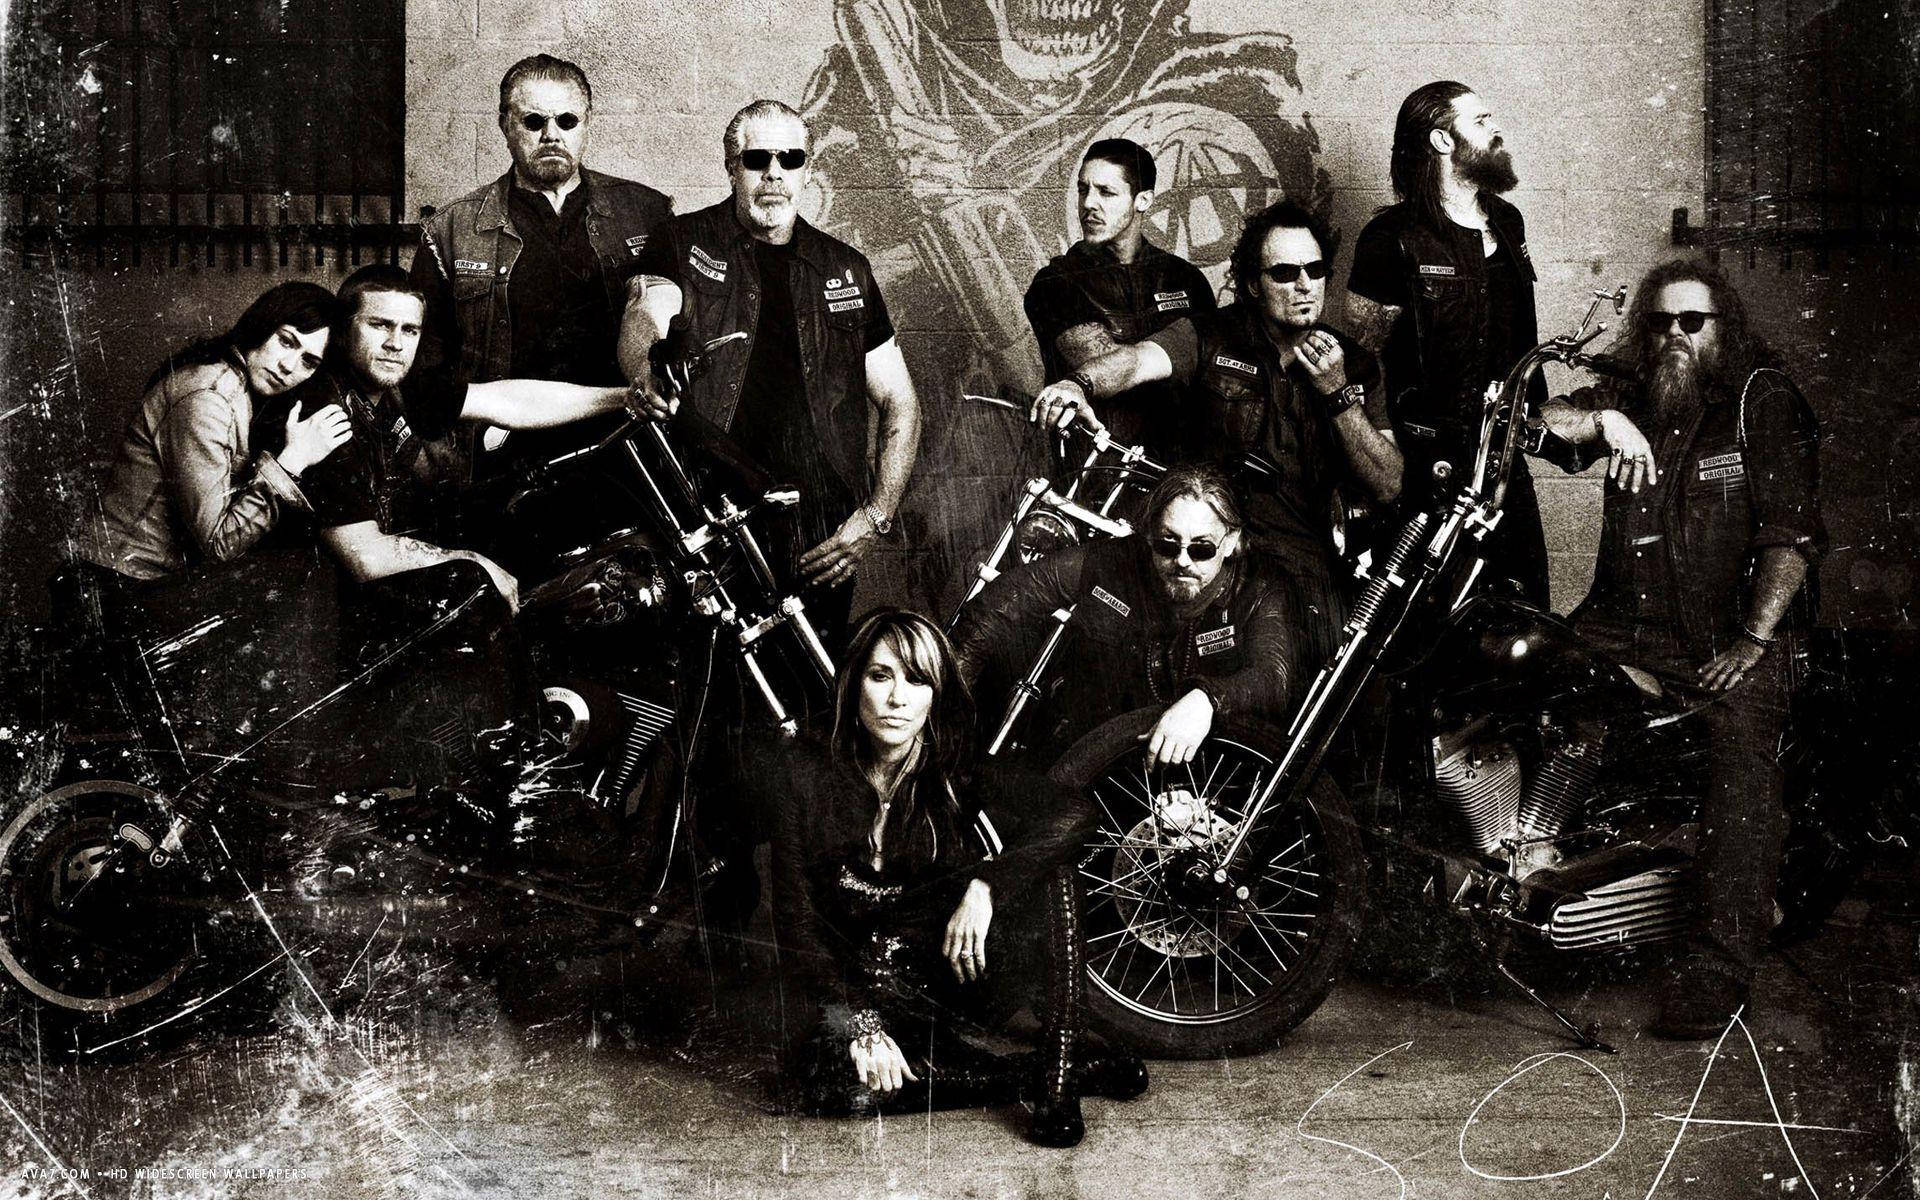 Einegruppe Von Motorradfahrern Posiert Für Ein Foto. Wallpaper